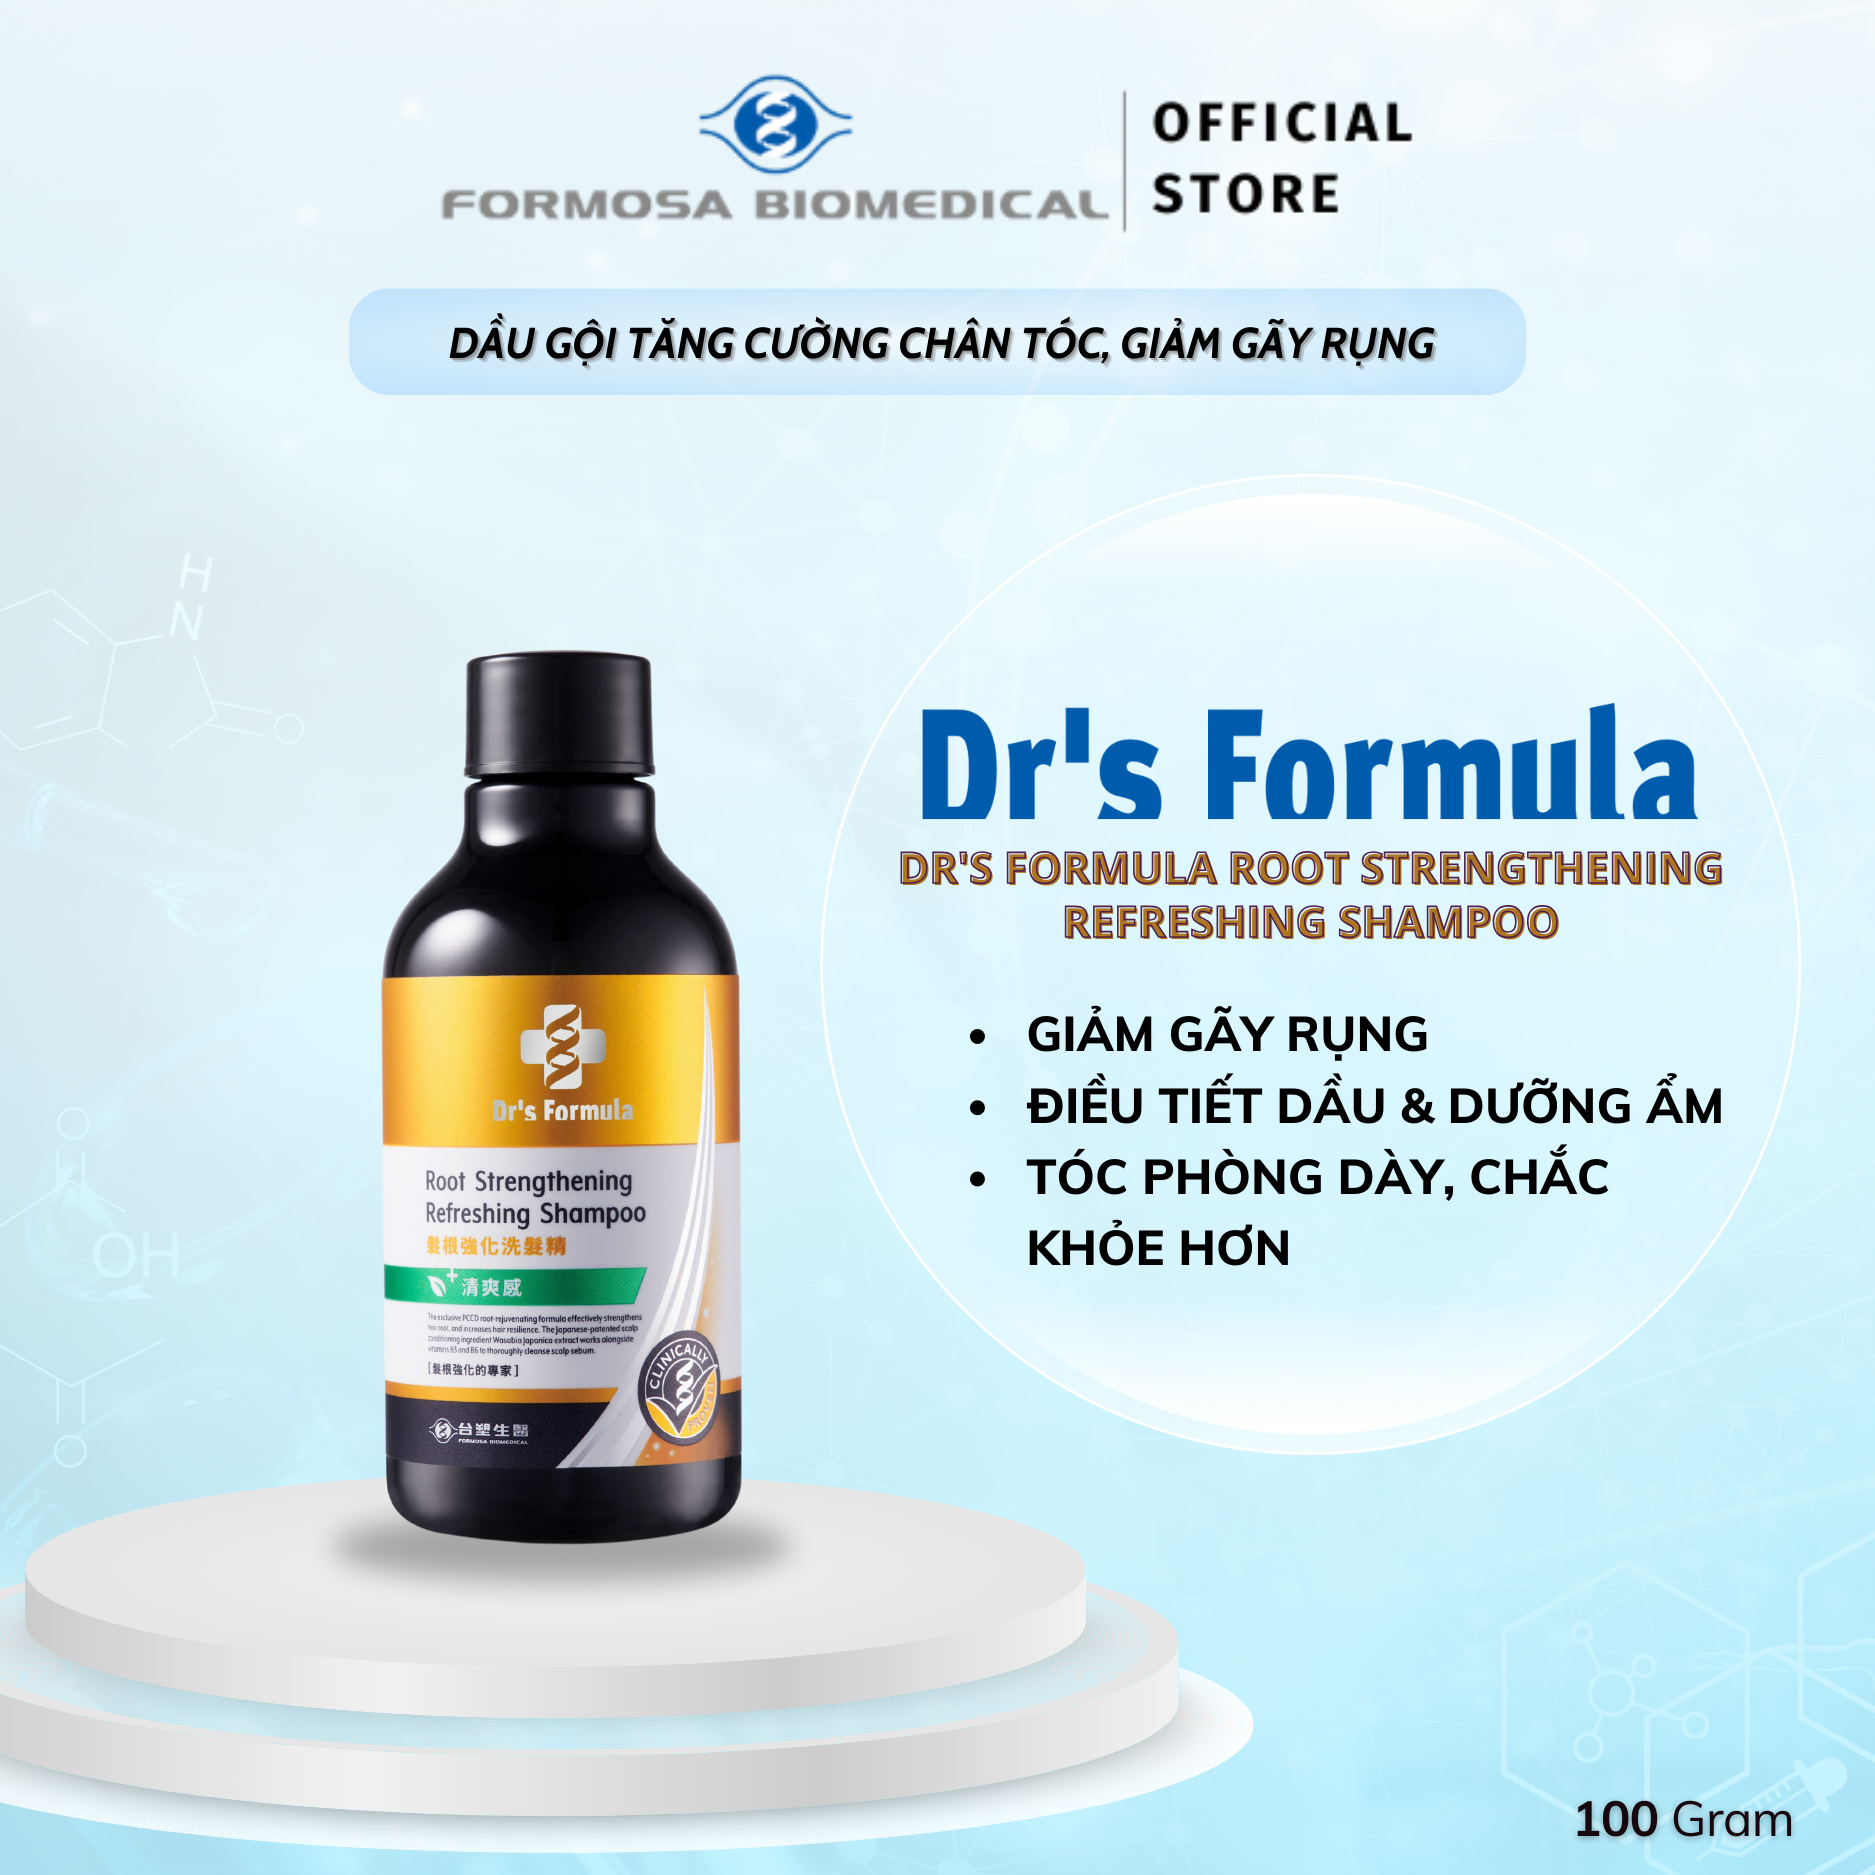 Dầu Gội Tăng Cường Chân Tóc Giảm Gãy Rụng Dr's Formula Root Strengthening Refreshing Shampoo 100g